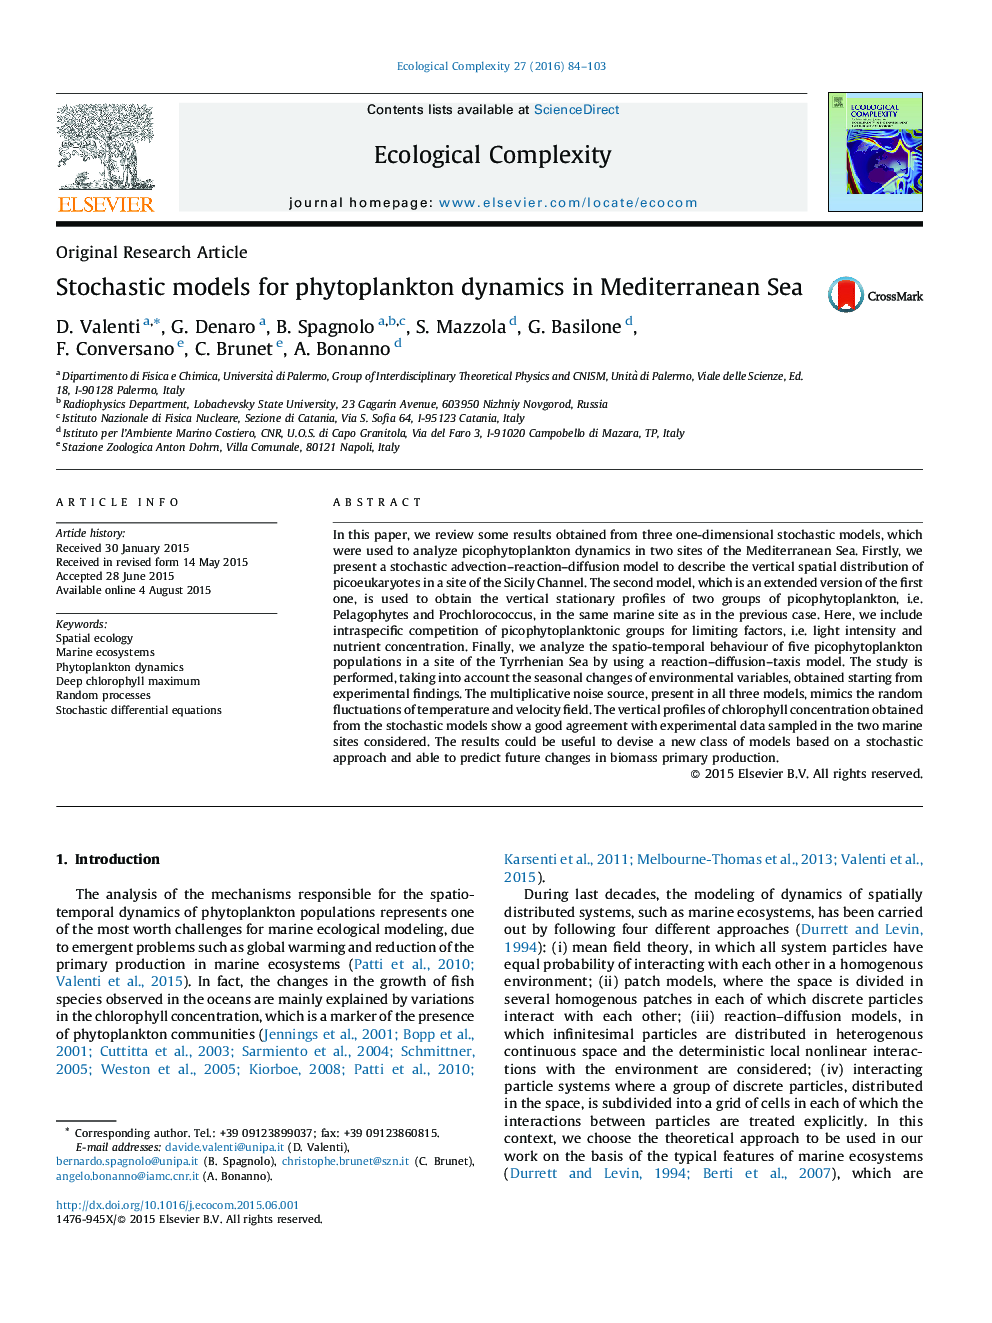 مدل های تصادفی برای پویایی های فیتوپلانکتون در دریای مدیترانه